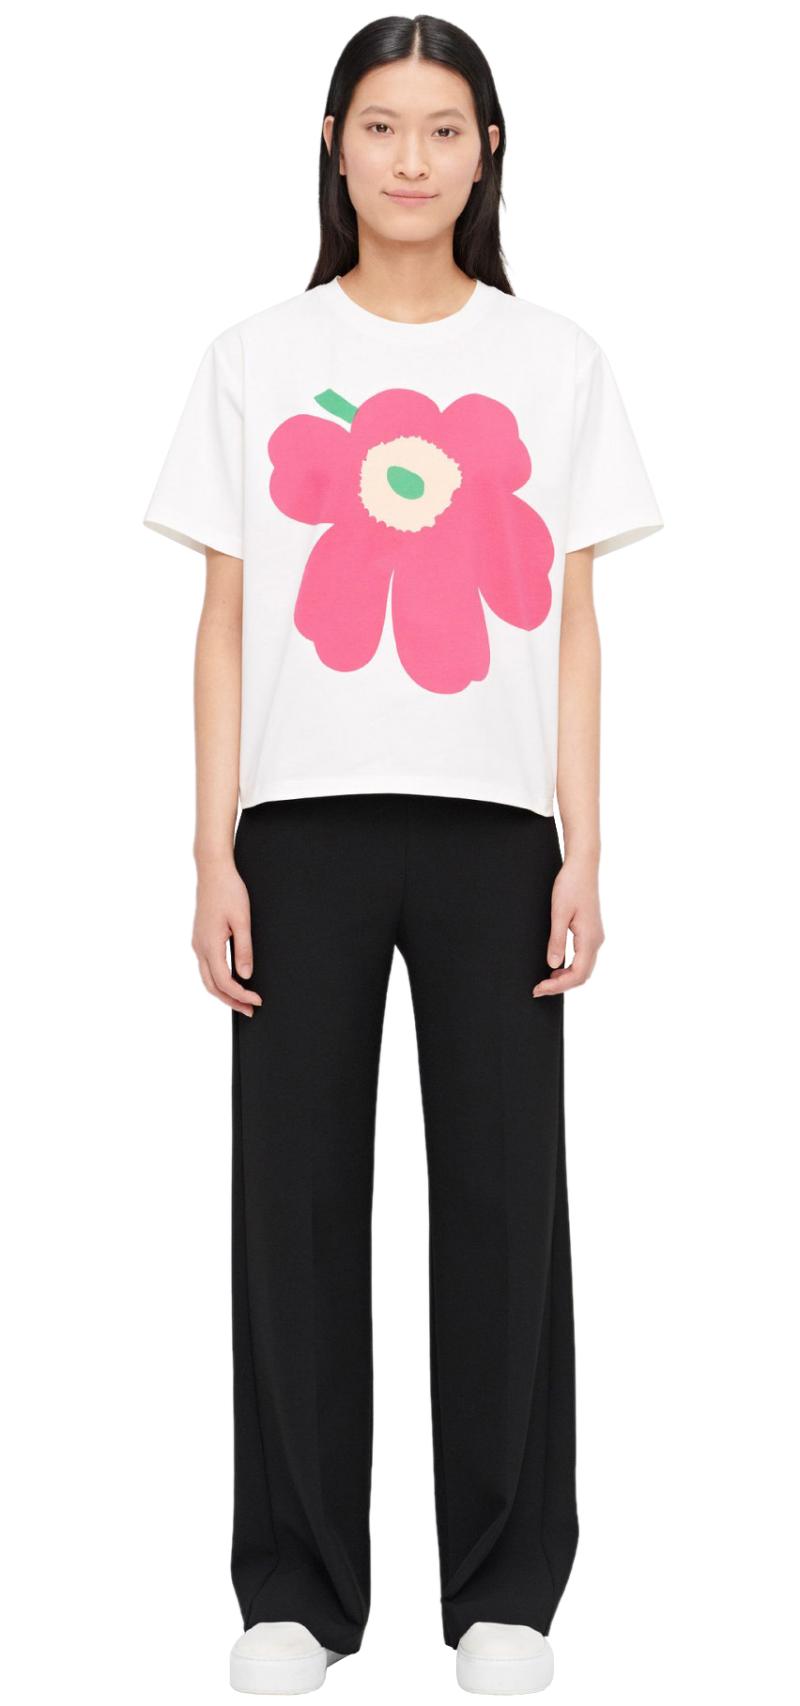 Marimekko - Vaikutus Unikko T-Shirt White, pink, green L